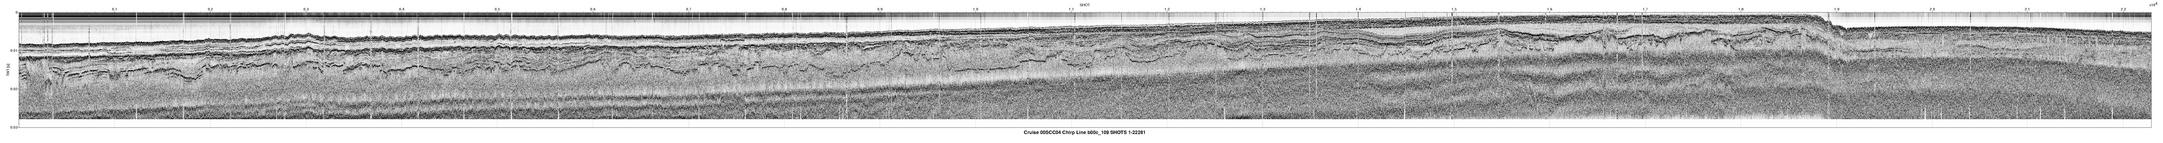 00SCC04 b00c_109 seismic profile image